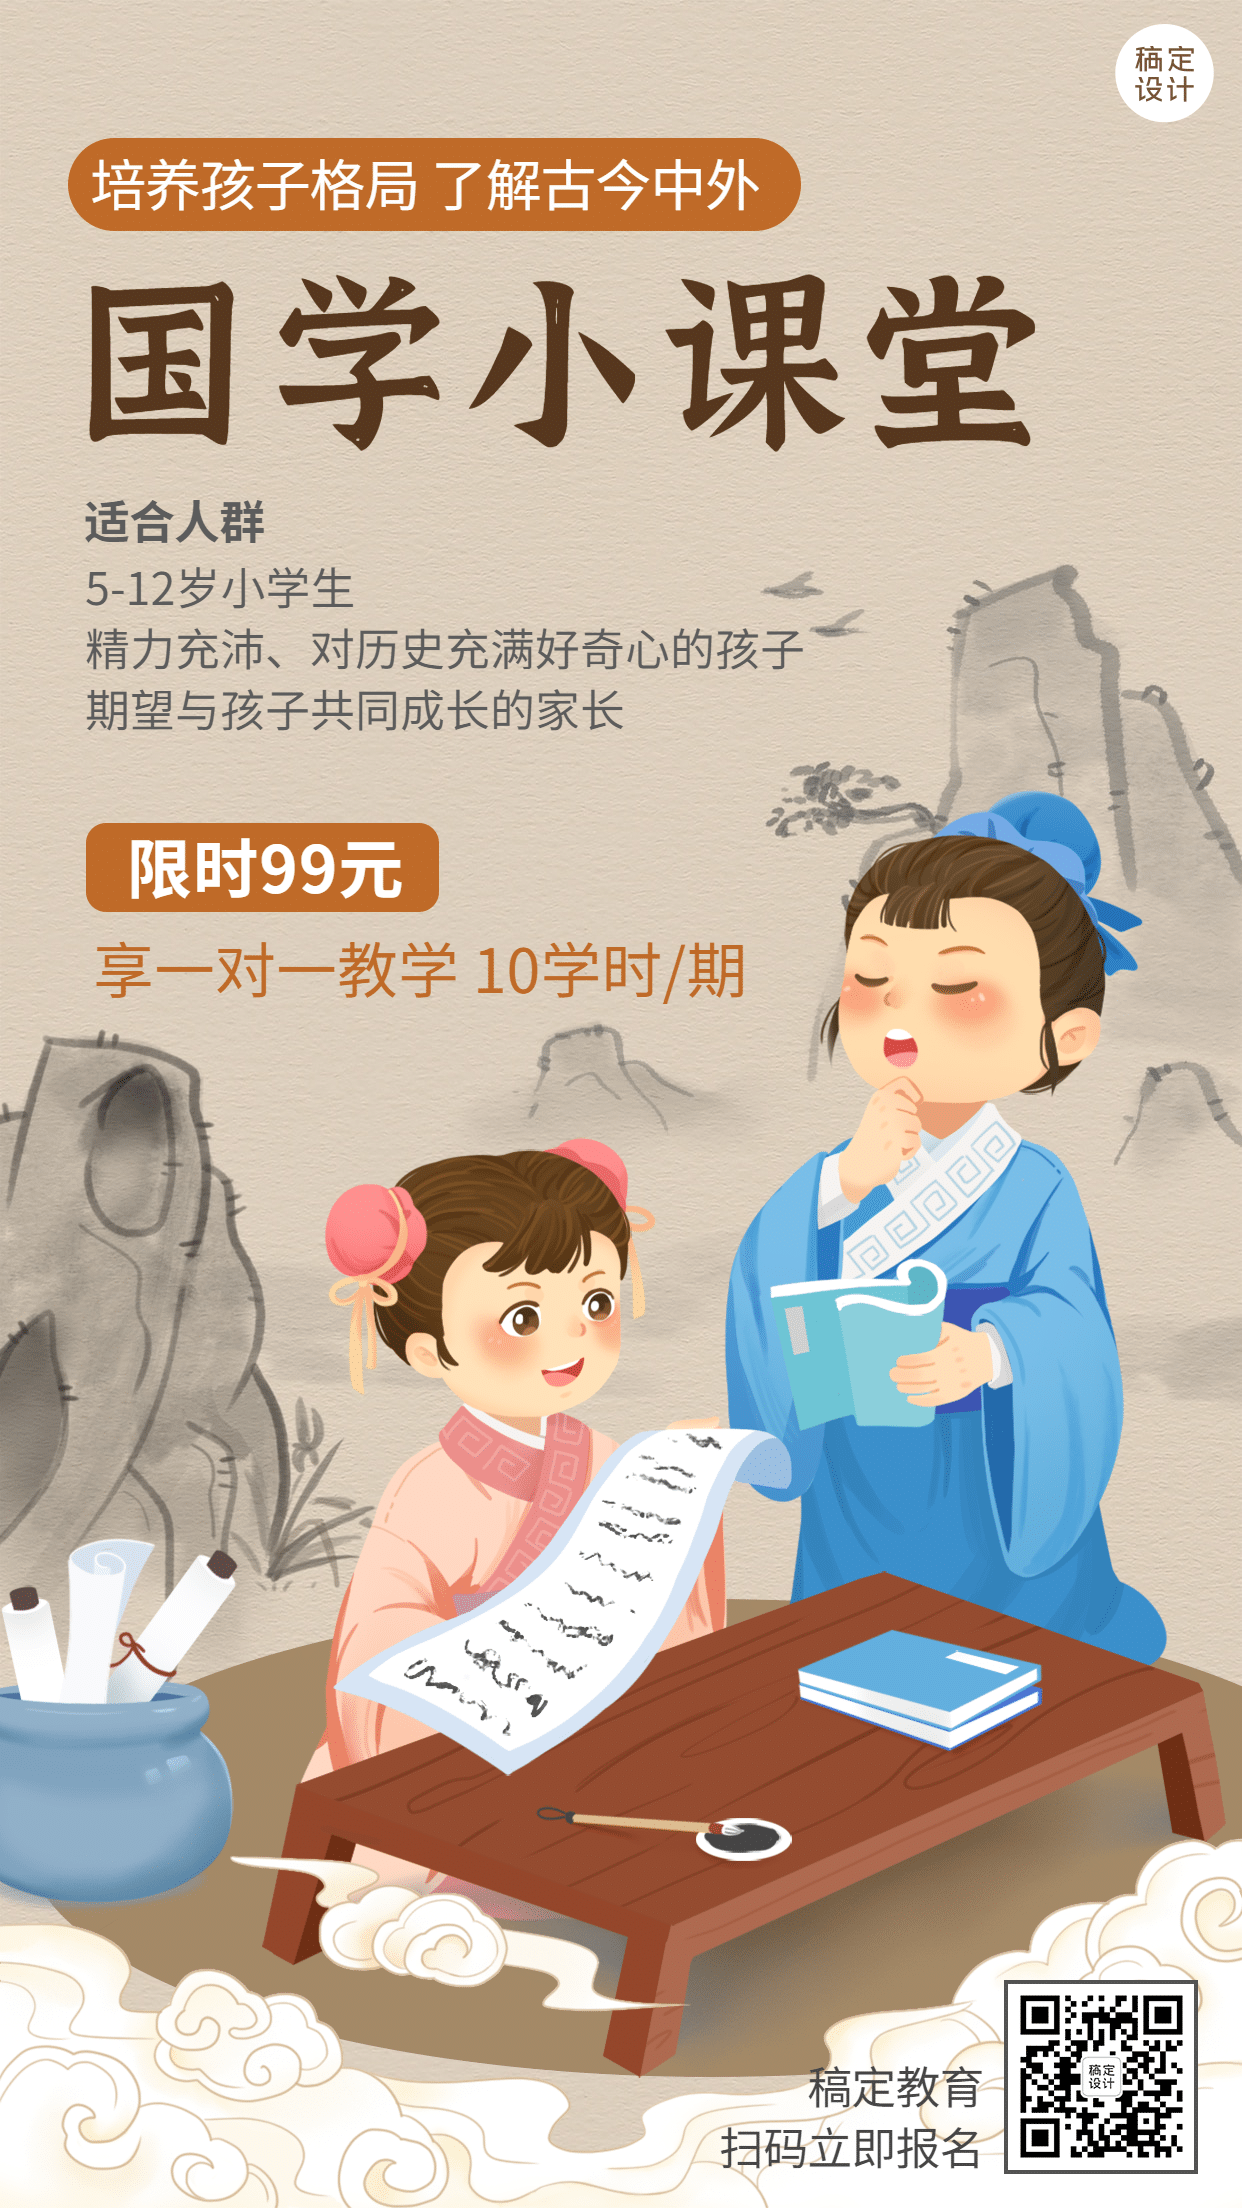 早幼教中国风国学课堂课程招生手绘竖版海报预览效果